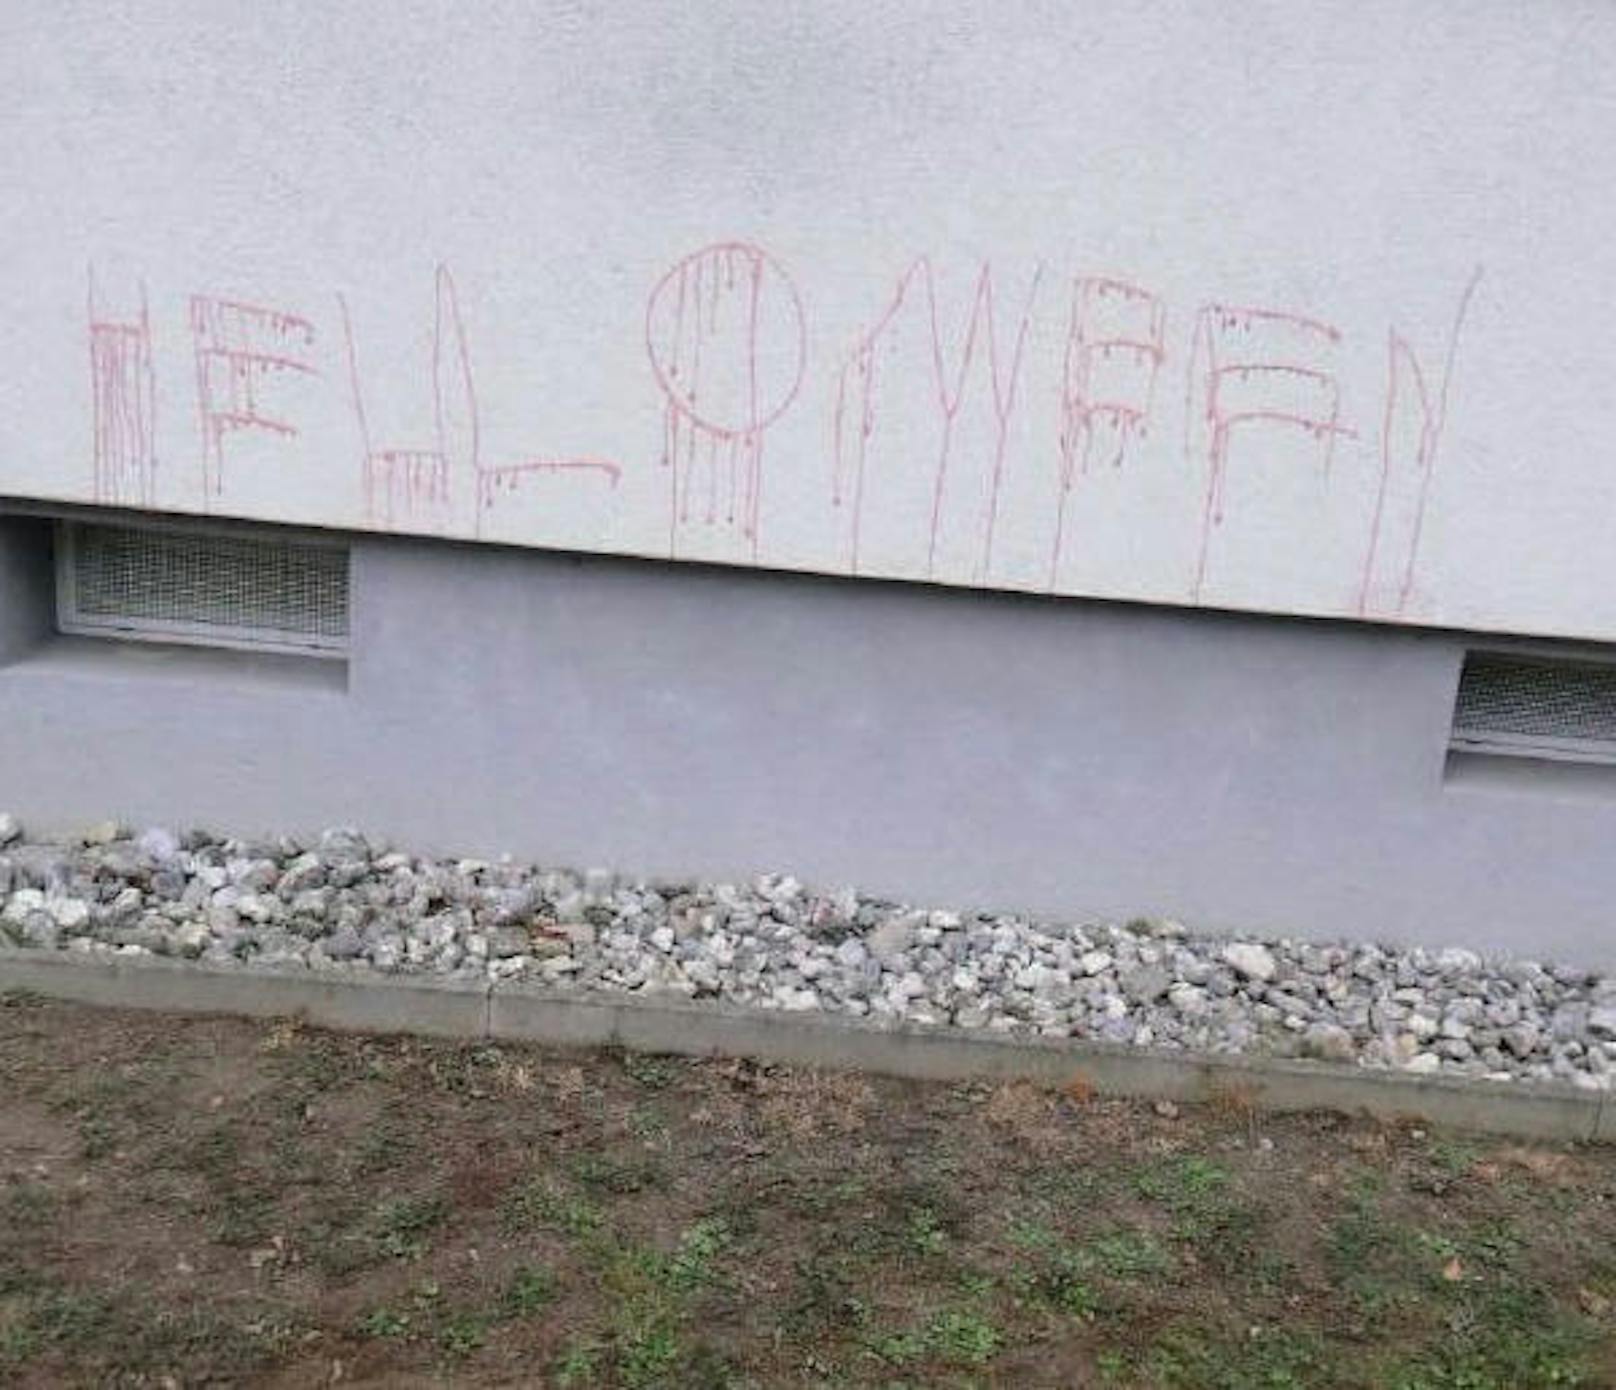 "Helloween" falsch geschrieben auf Hausfassade.